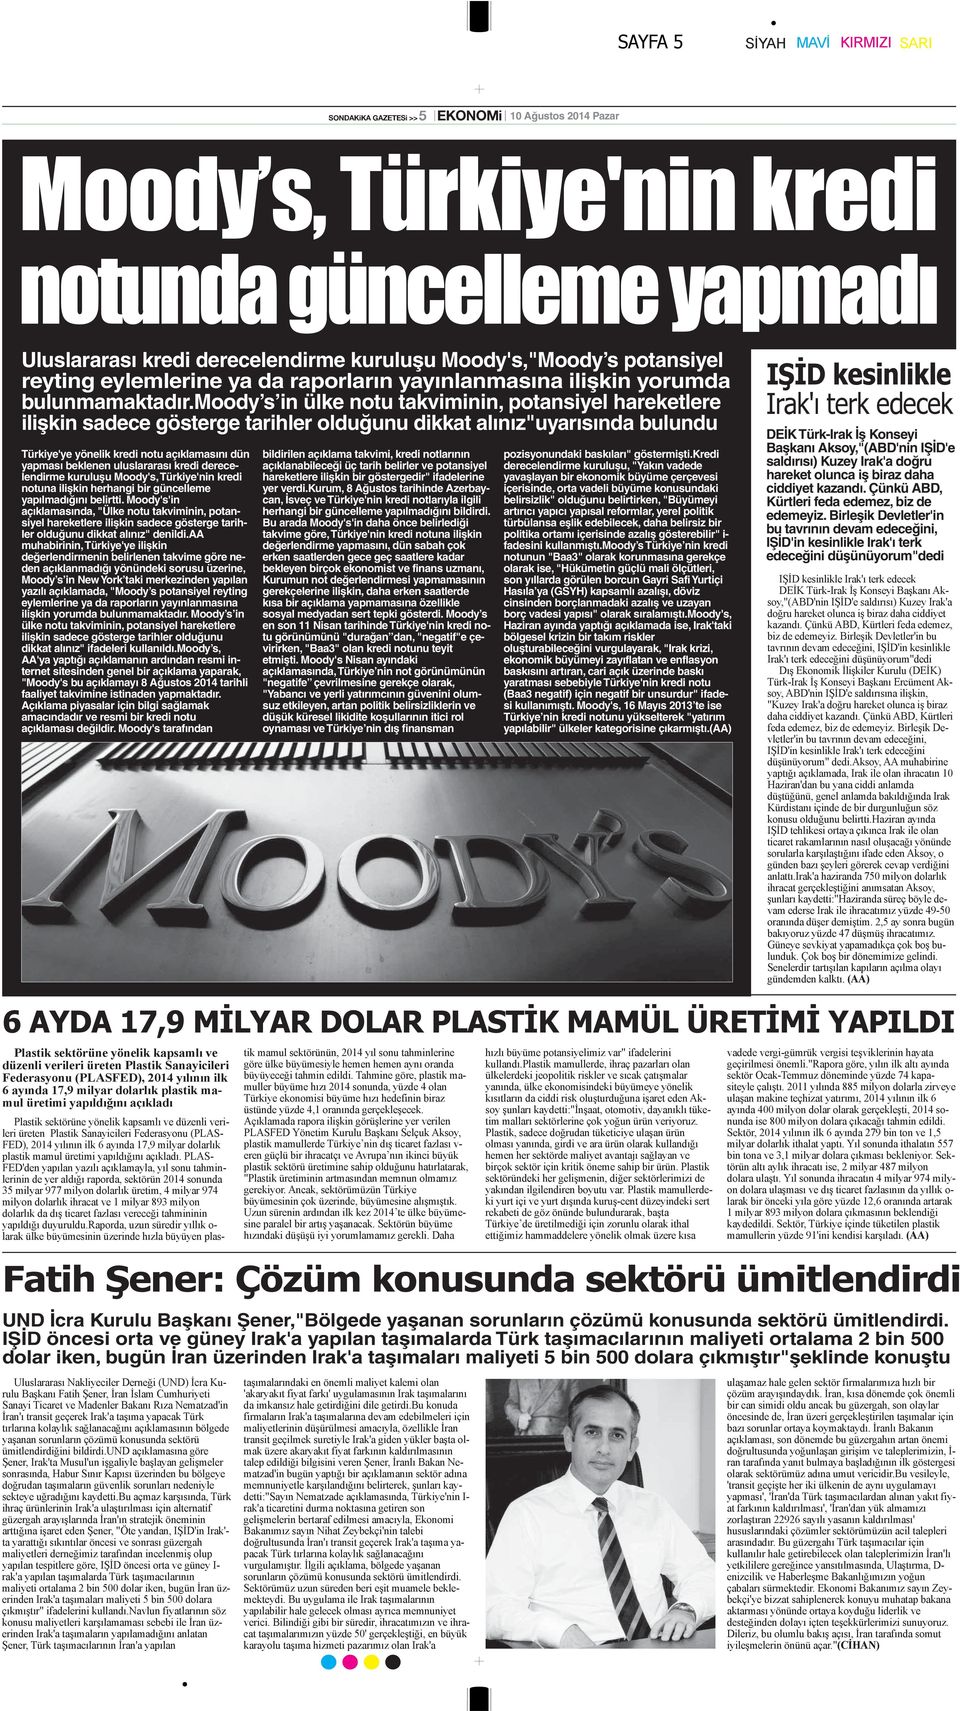 uluslararası kredi derecelendirme kuruluşu Moody's, Türkiye'nin kredi notuna ilişkin herhangi bir güncelleme yapılmadığını belirtti.